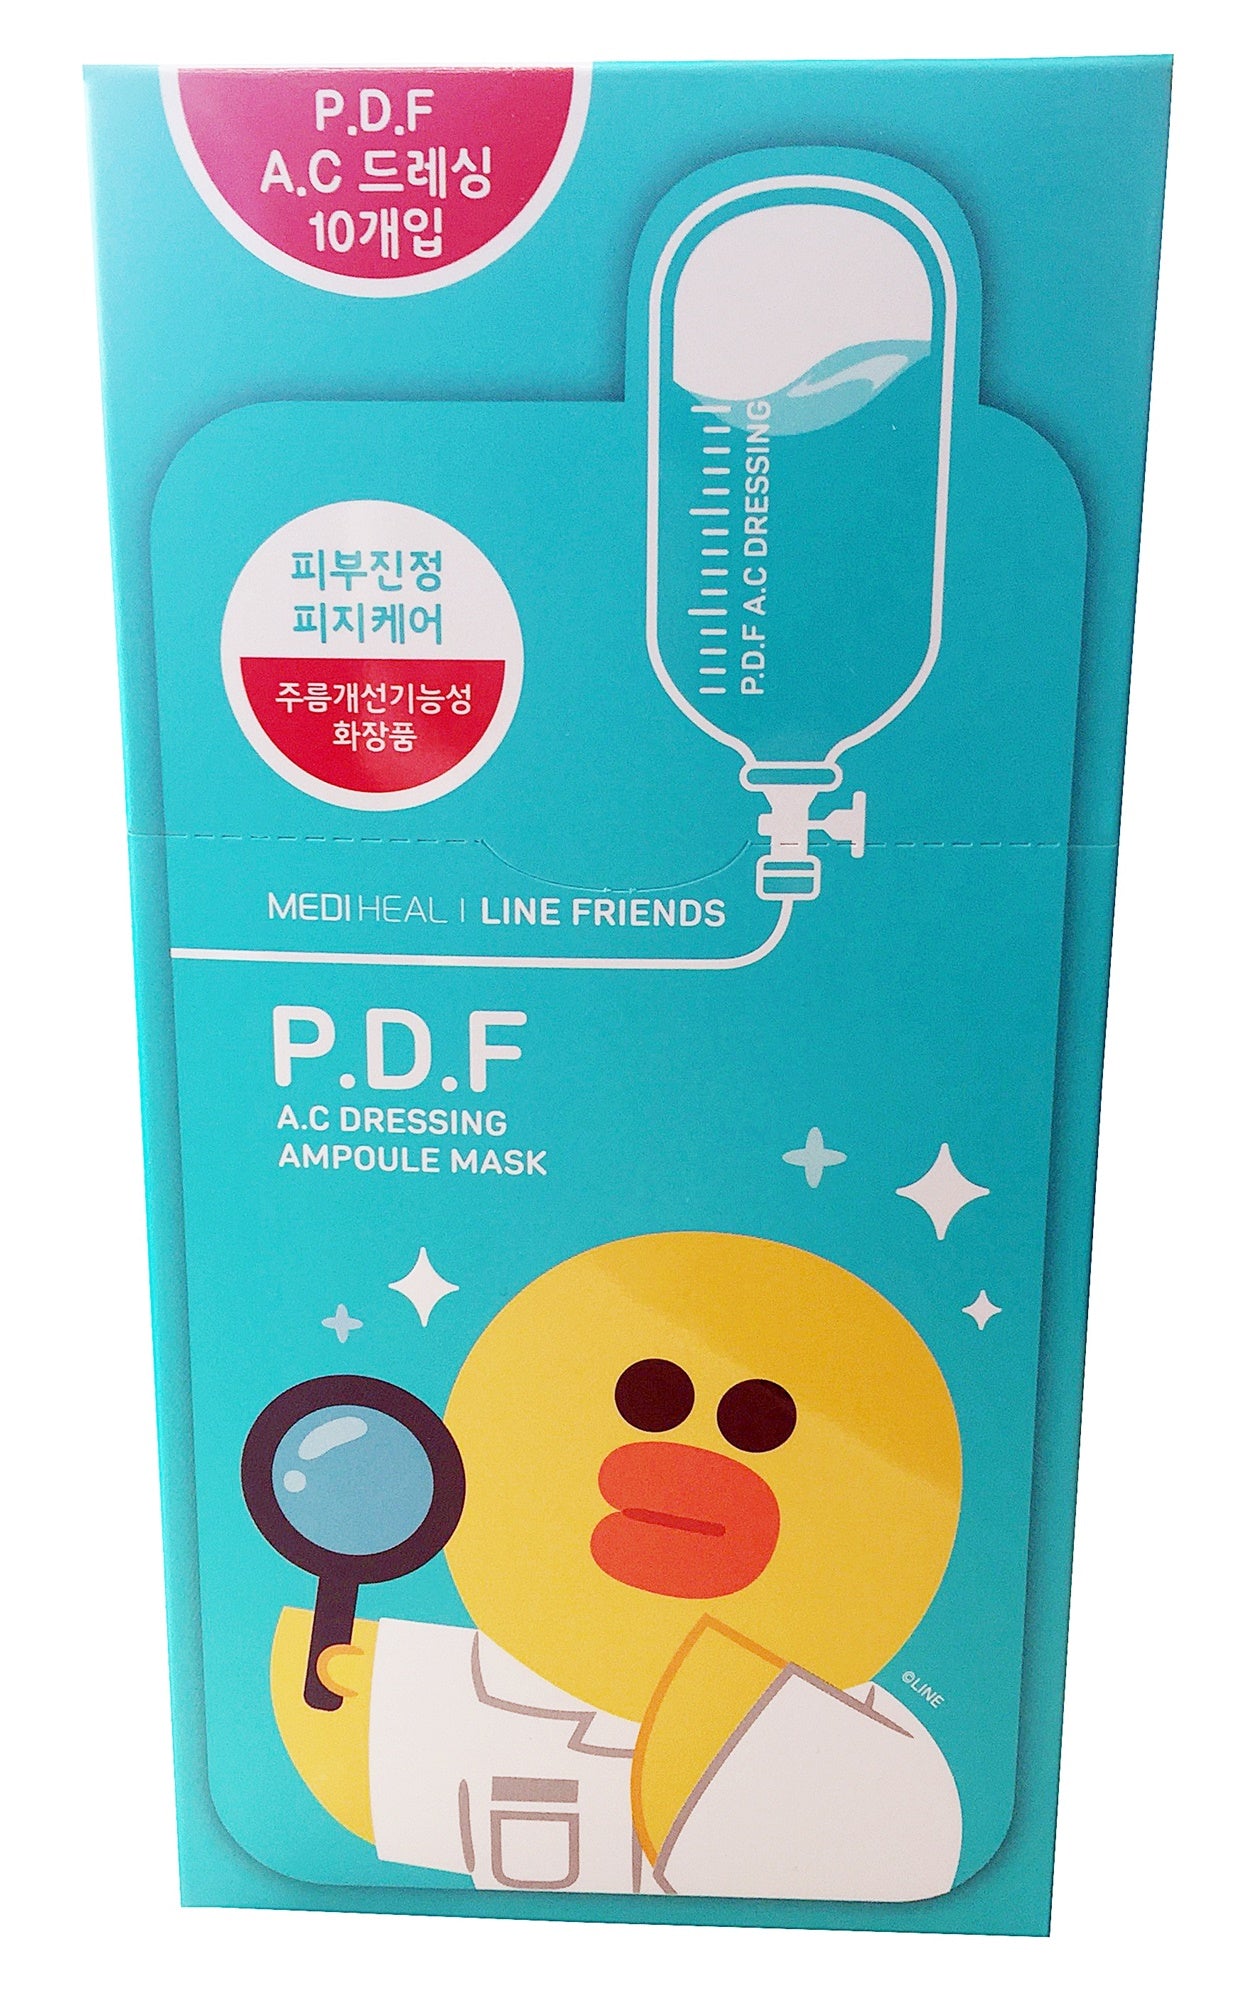 Mediheal Line Friends P.D.F A.C Dressing Ampoule Face Masks [10 sheets]